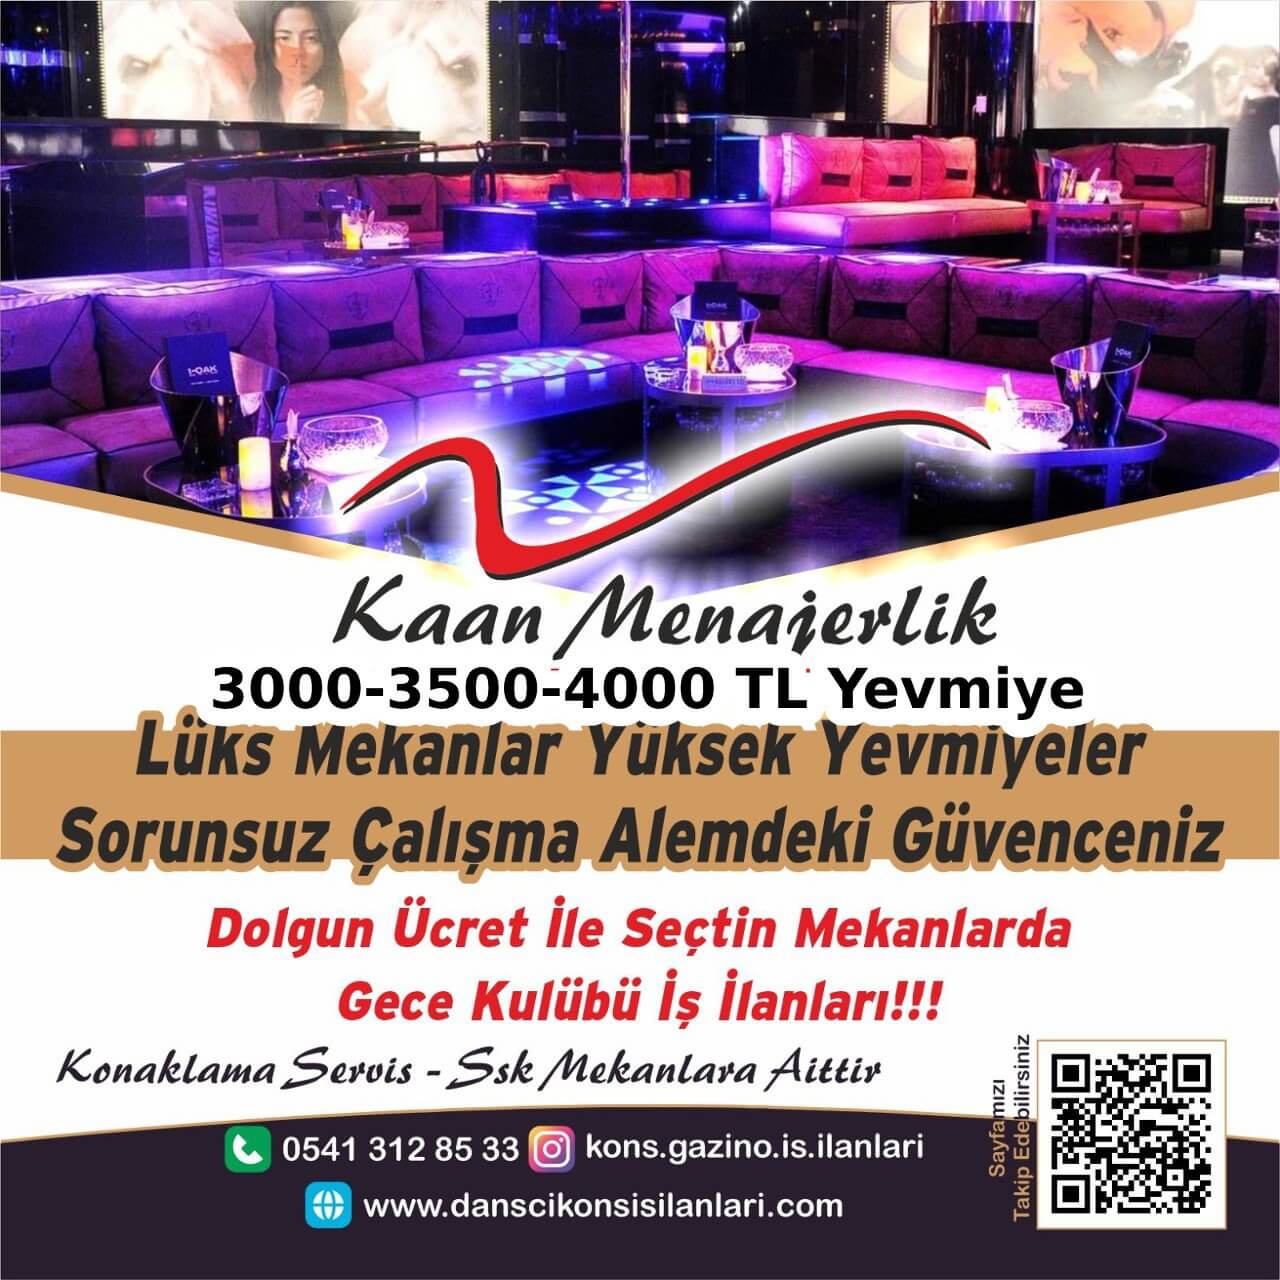 Trabzon Gazino İş İlanları